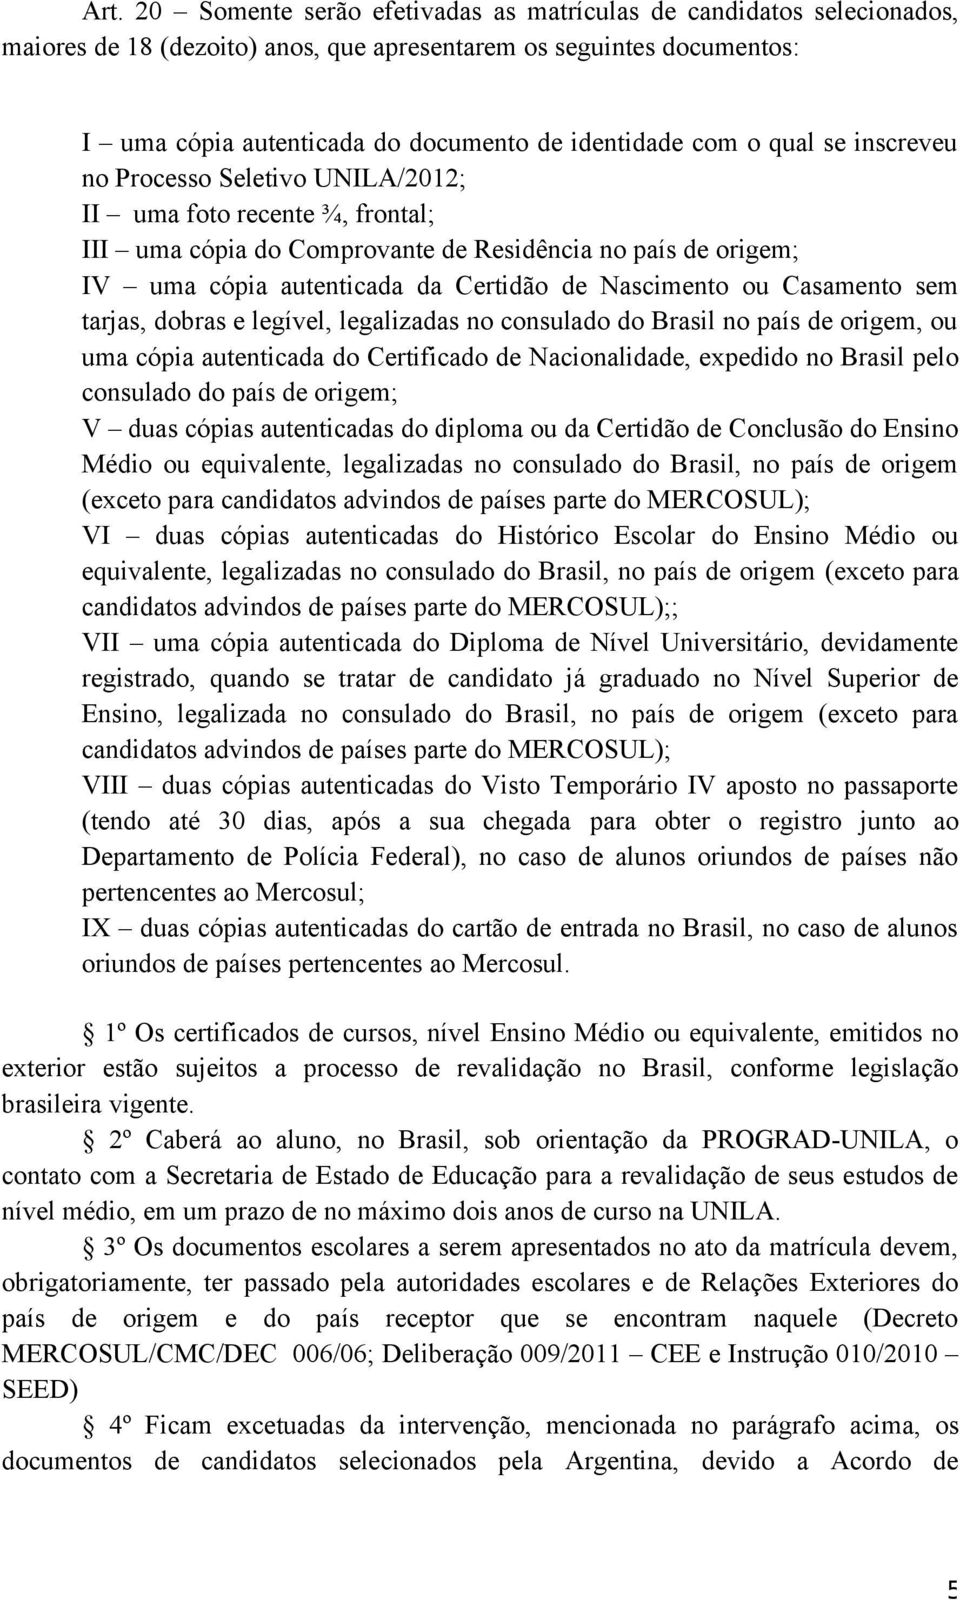 Nascimento ou Casamento sem tarjas, dobras e legível, legalizadas no consulado do Brasil no país de origem, ou uma cópia autenticada do Certificado de Nacionalidade, expedido no Brasil pelo consulado